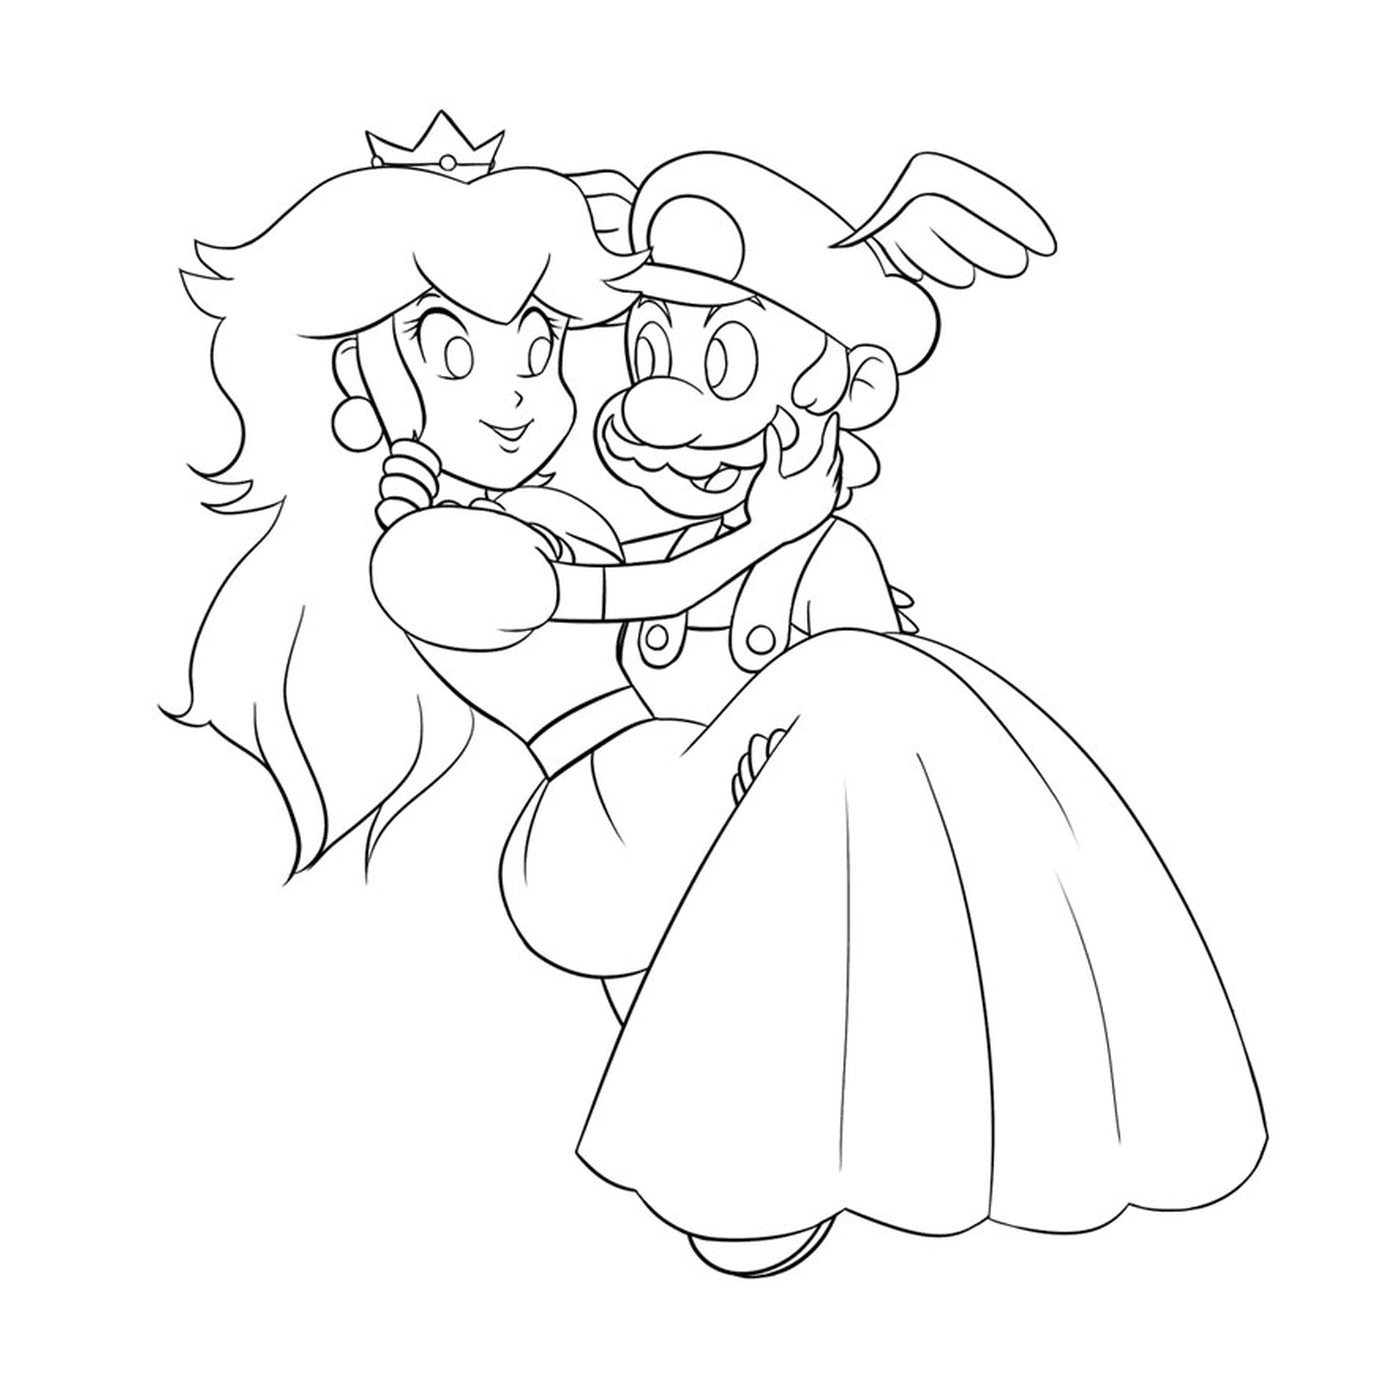  Марио и принцесса 